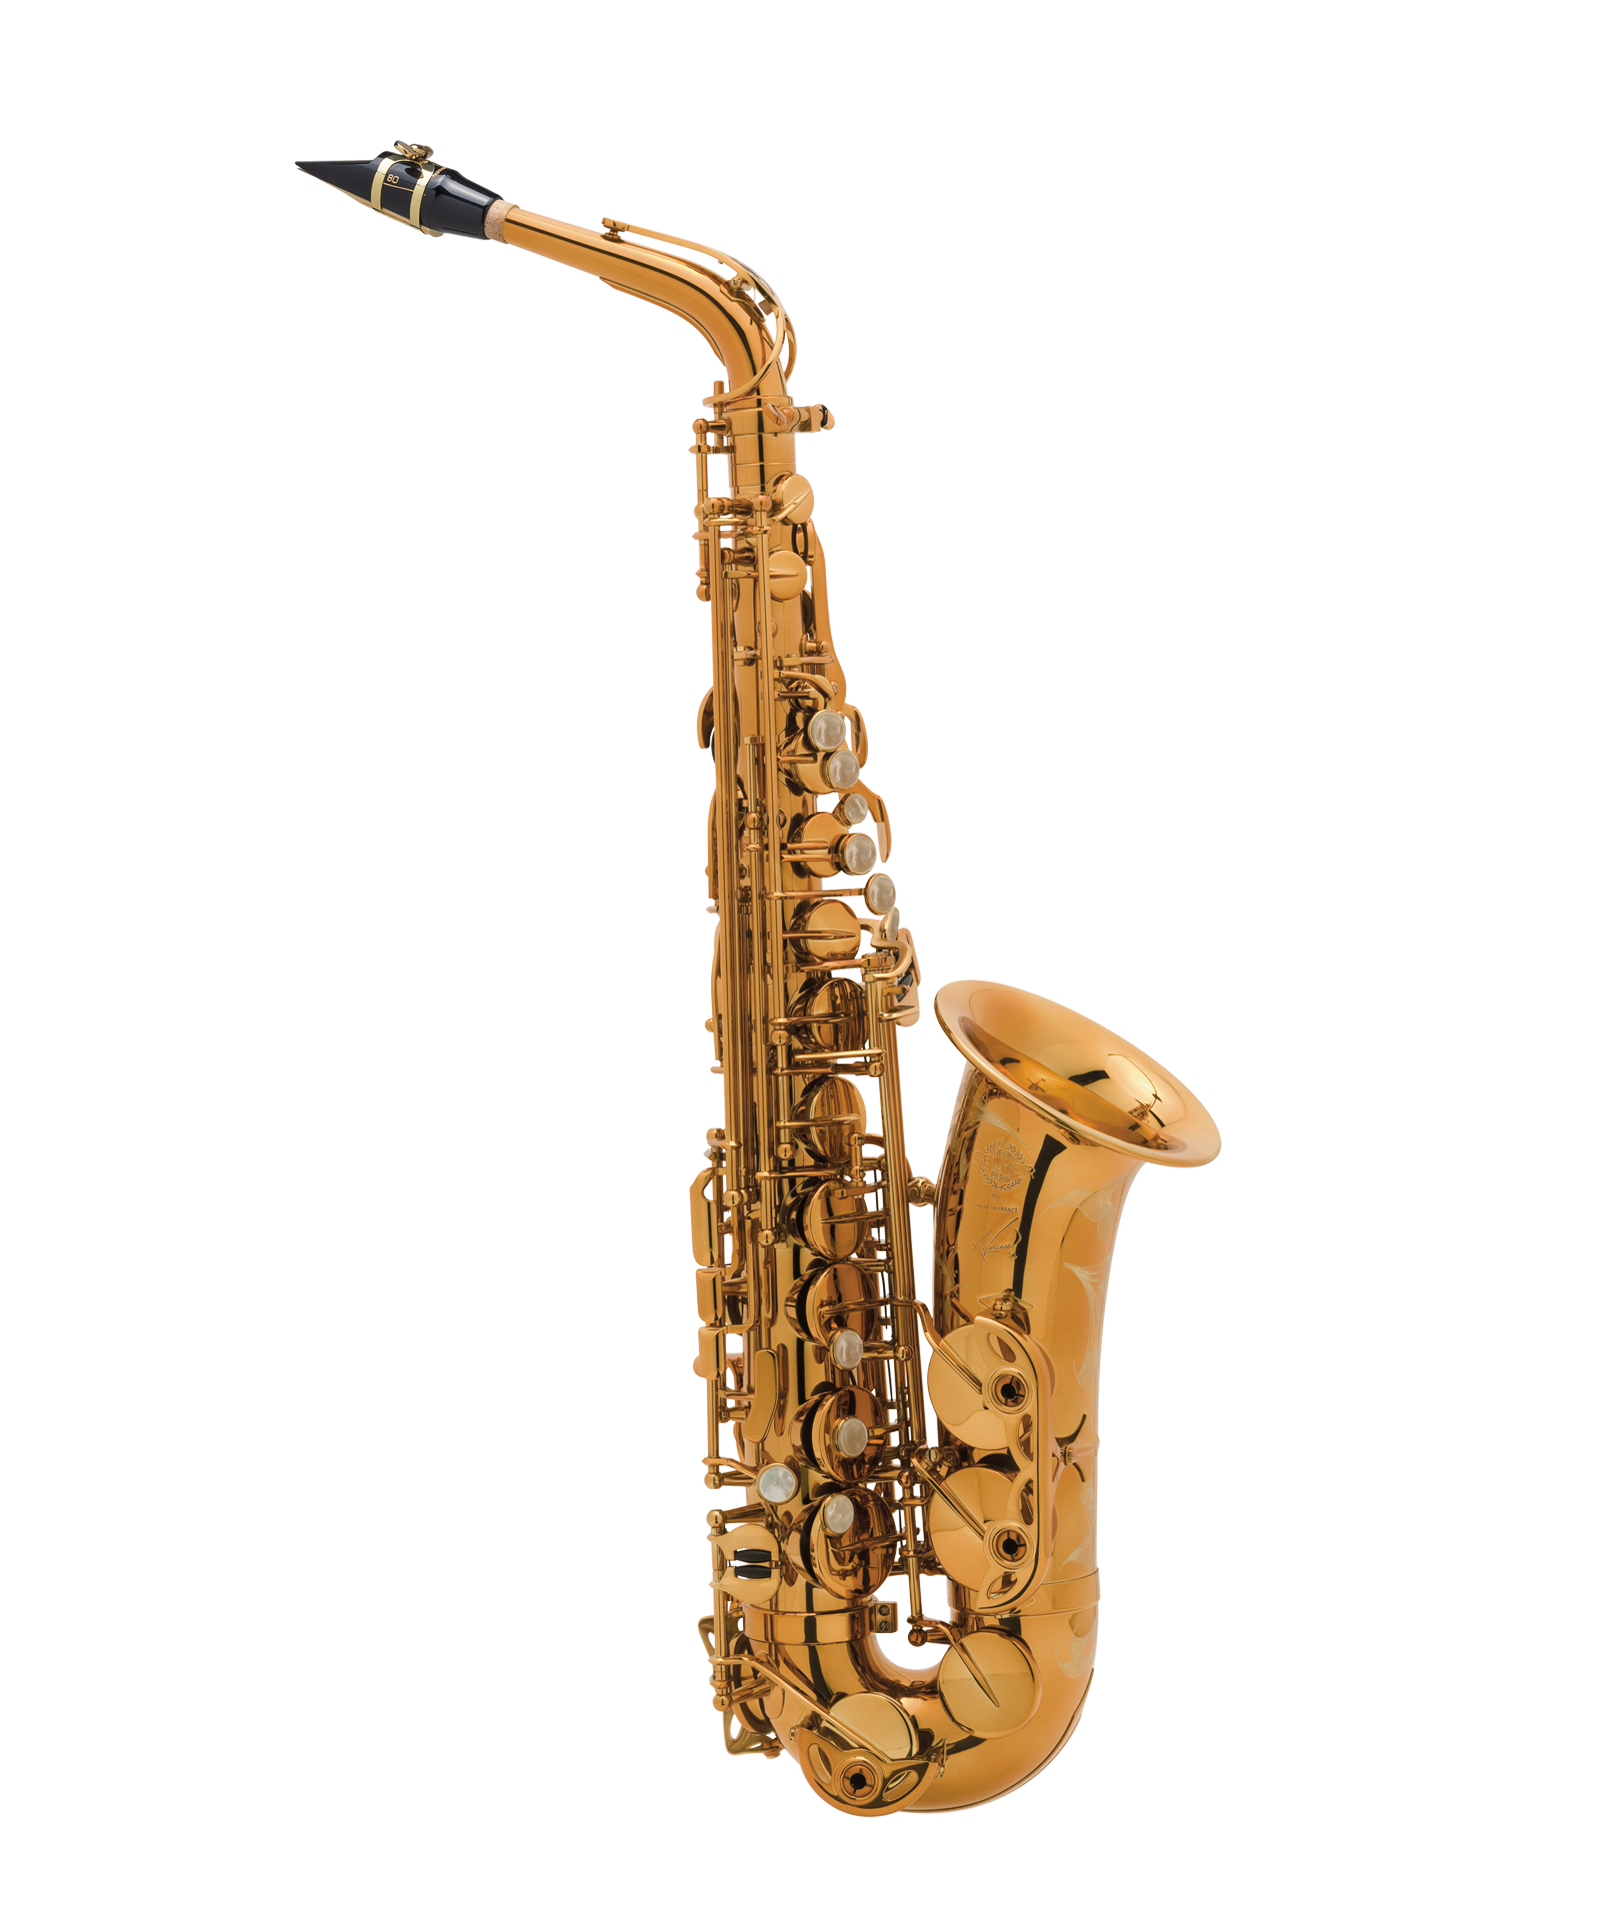 Olds ( Pierret ) Parisian tenor saxophone review